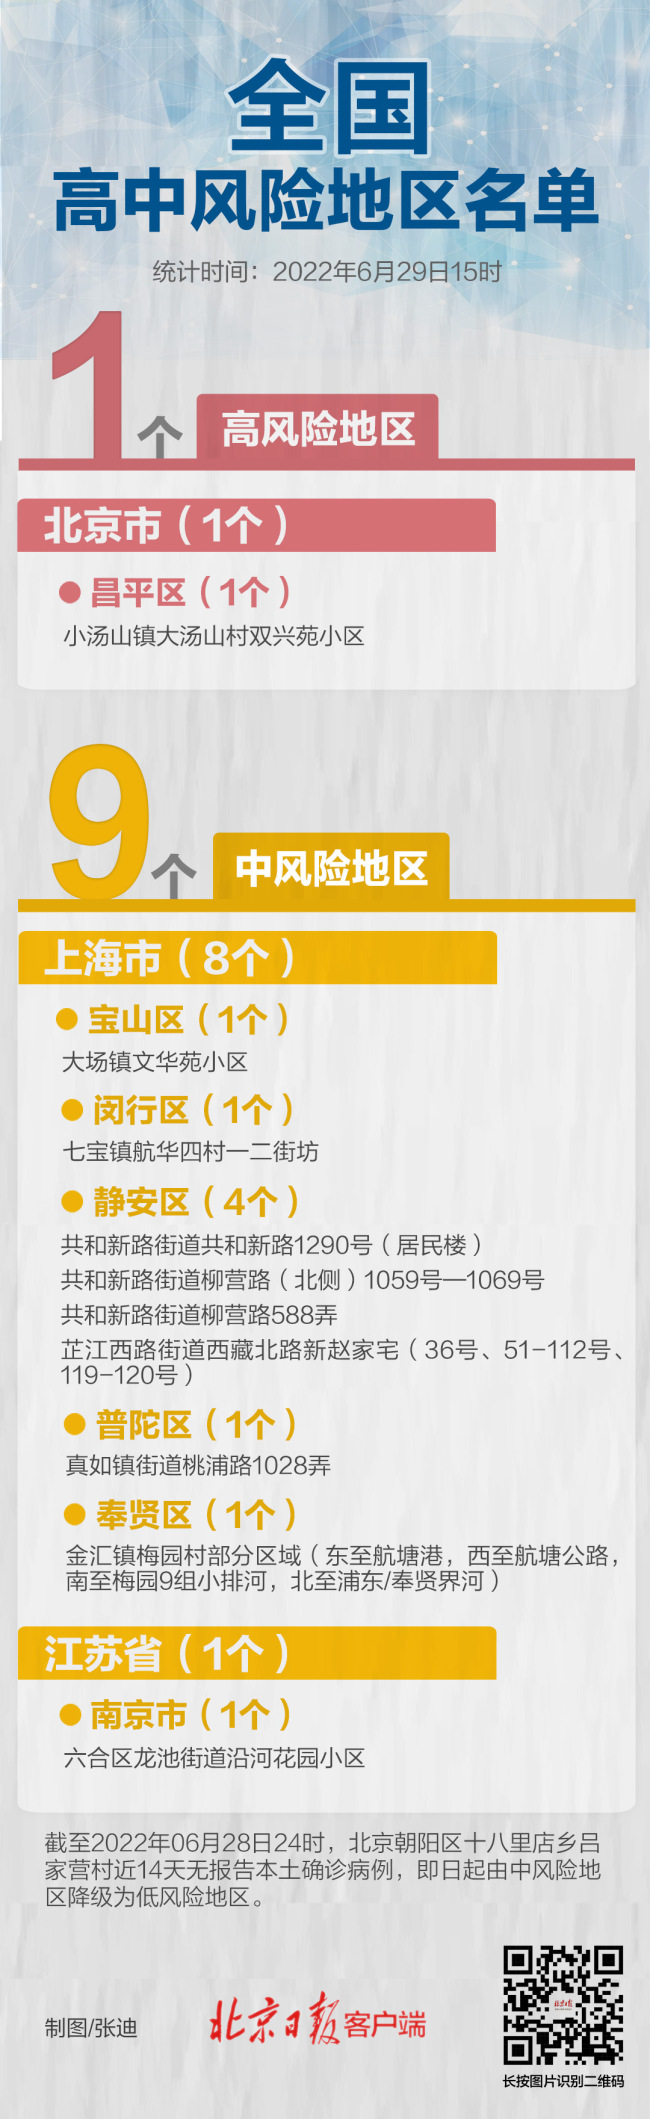 6月24日0时至15时，北京新增本土感染者2例 - 8057 - Worldcup 百度热点快讯